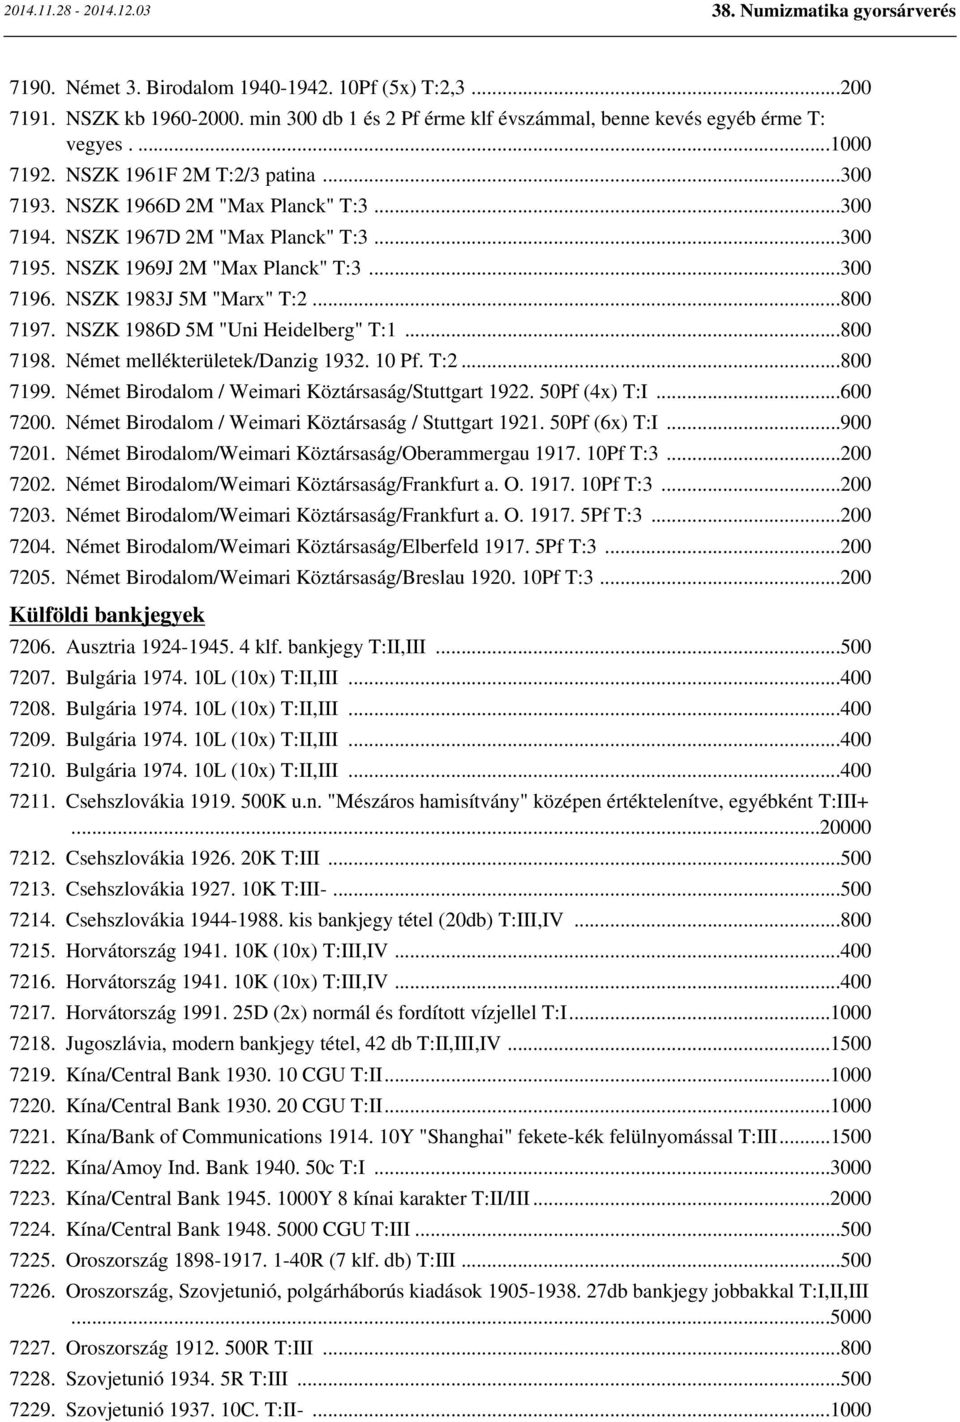 NSZK 1986D 5M "Uni Heidelberg" T:1...800 7198. Német mellékterületek/danzig 1932. 10 Pf. T:2...800 7199. Német Birodalom / Weimari Köztársaság/Stuttgart 1922. 50Pf (4x) T:I...600 7200.